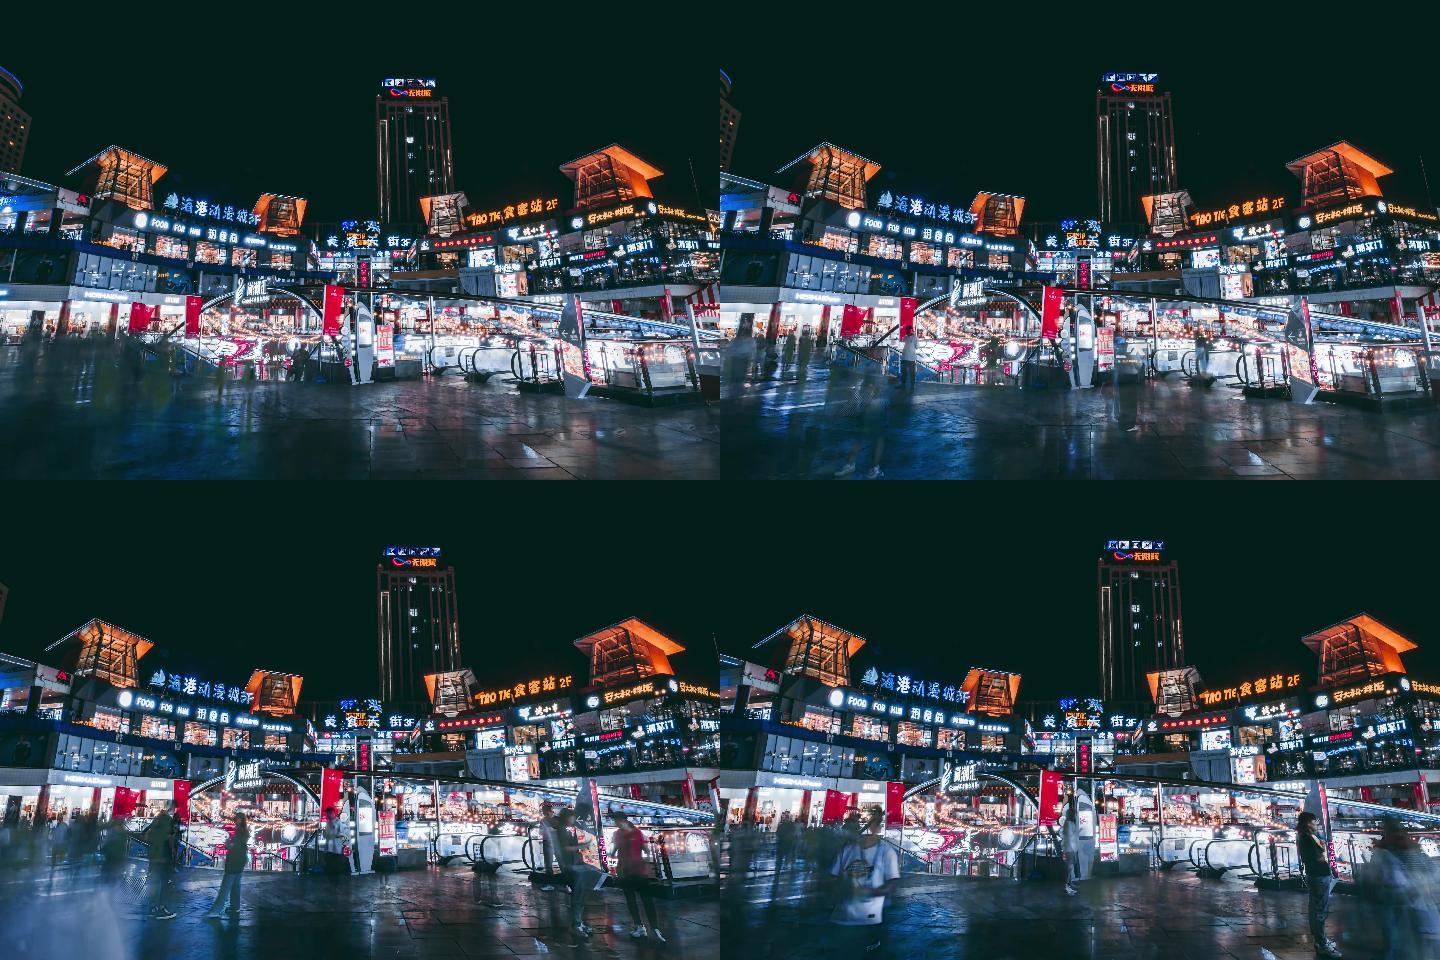 郑州二七塔商业街繁华景象